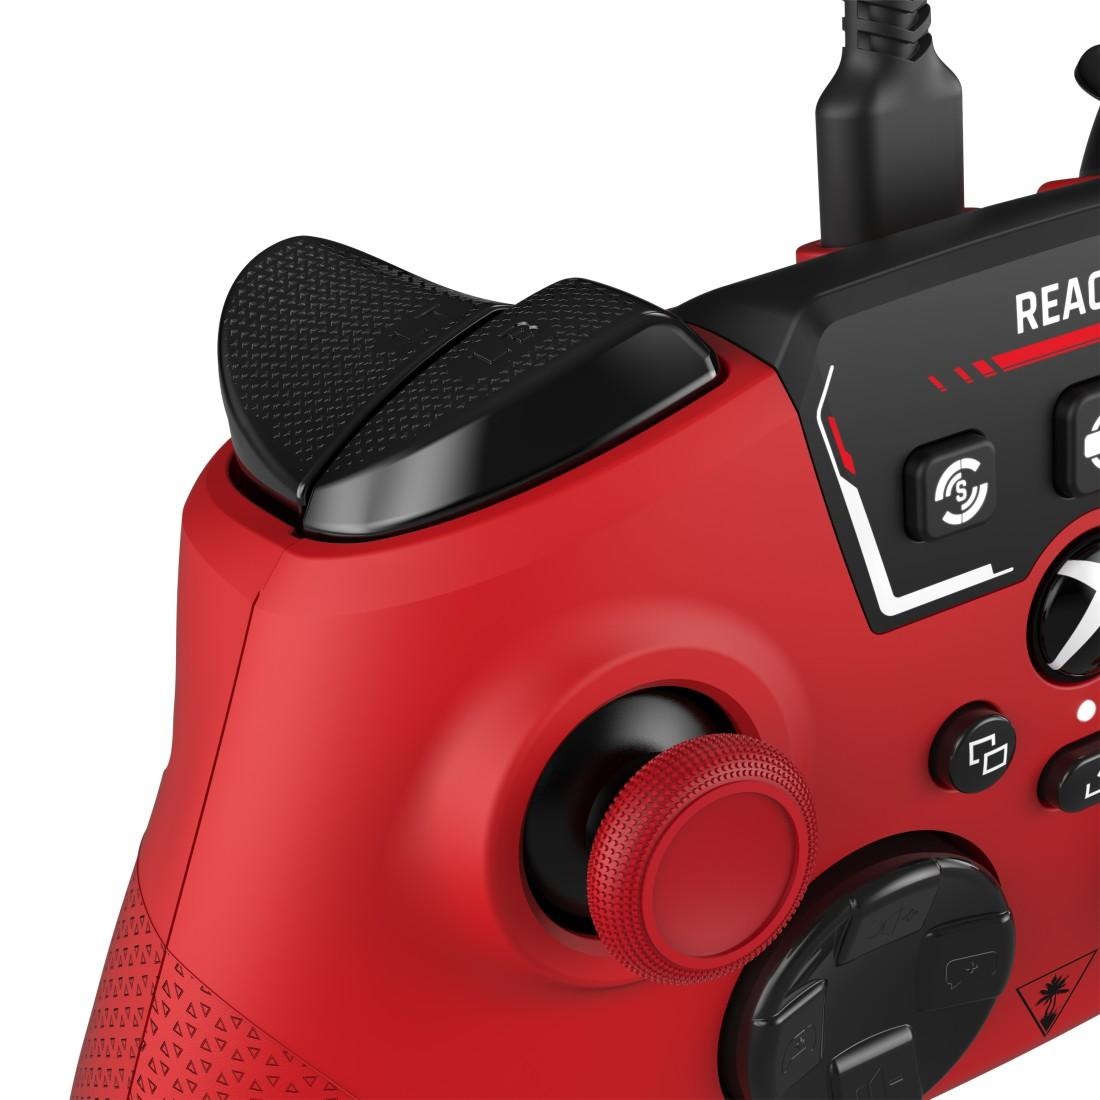 Turtle Beach Controller »React-R, für Xbox Series X/Xbox Series S«